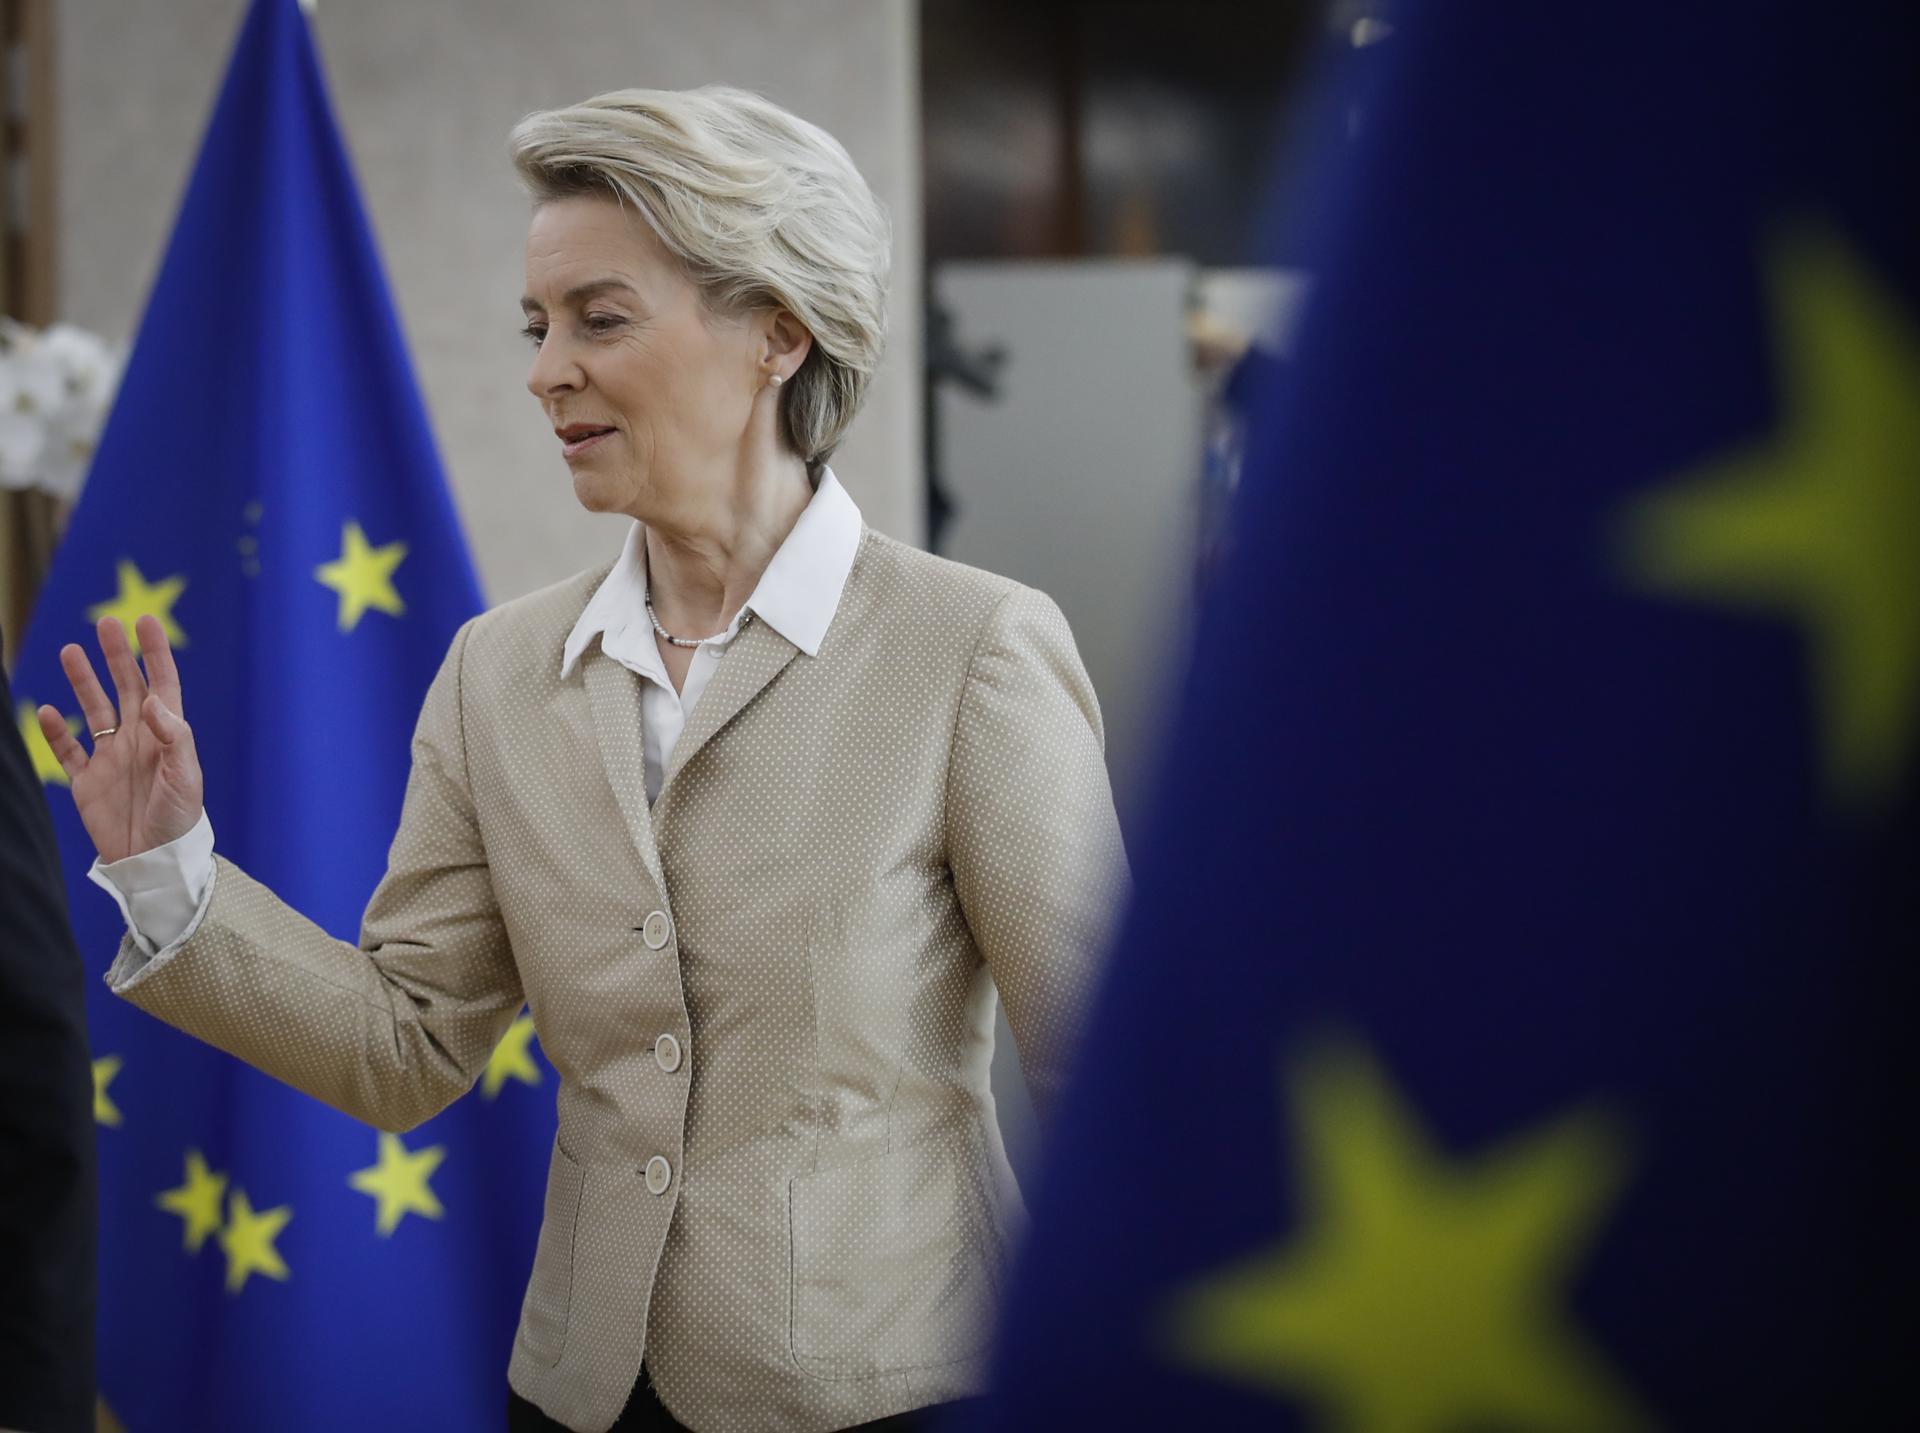 Bruselas (Bélgica), 22/02/2023.- La presidenta de la Comisión Europea, Ursula von der Leyen, llega para presidir la reunión universitaria semanal de la Comisión Europea en Bruselas, Bélgica, el 22 de febrero de 2023. (Bélgica, Bruselas) EFE/EPA/OLIVIER HOSLET